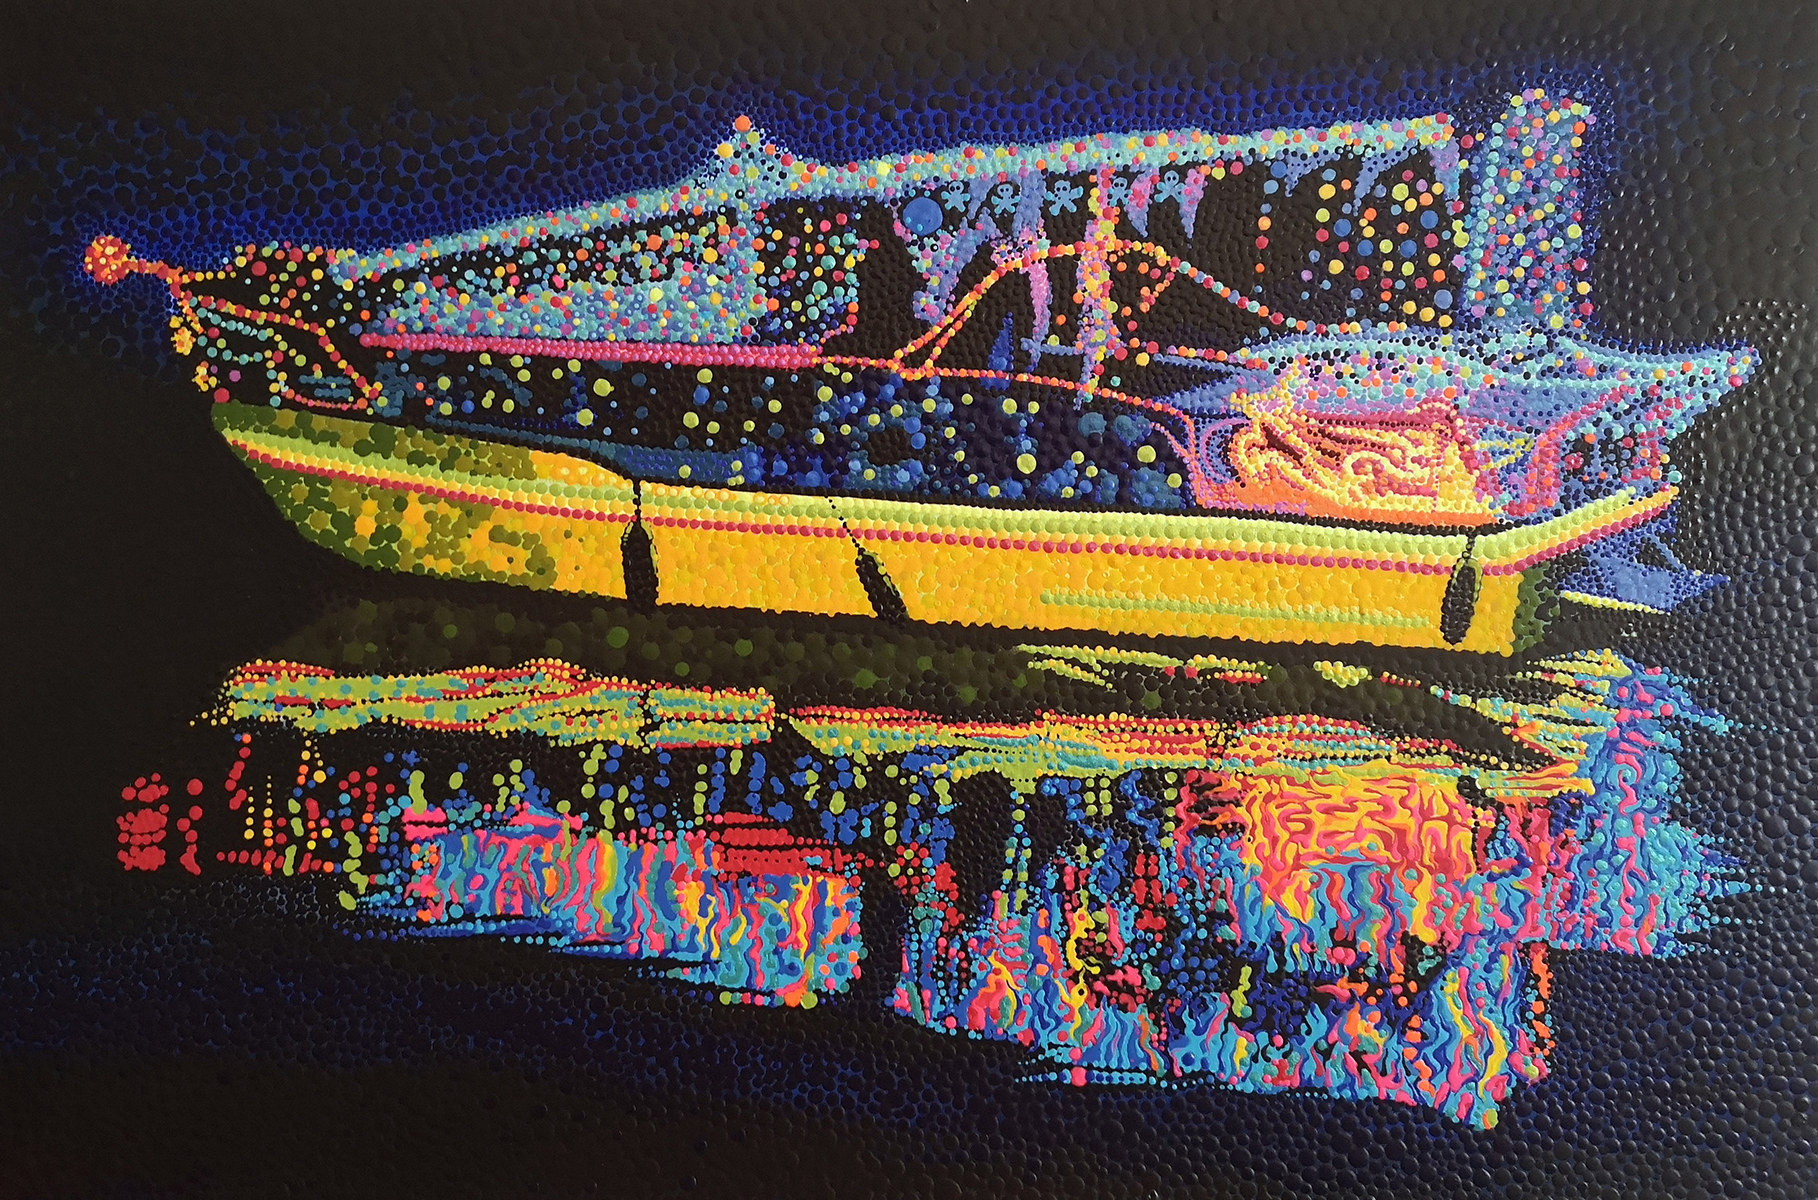 Illuminated Boat